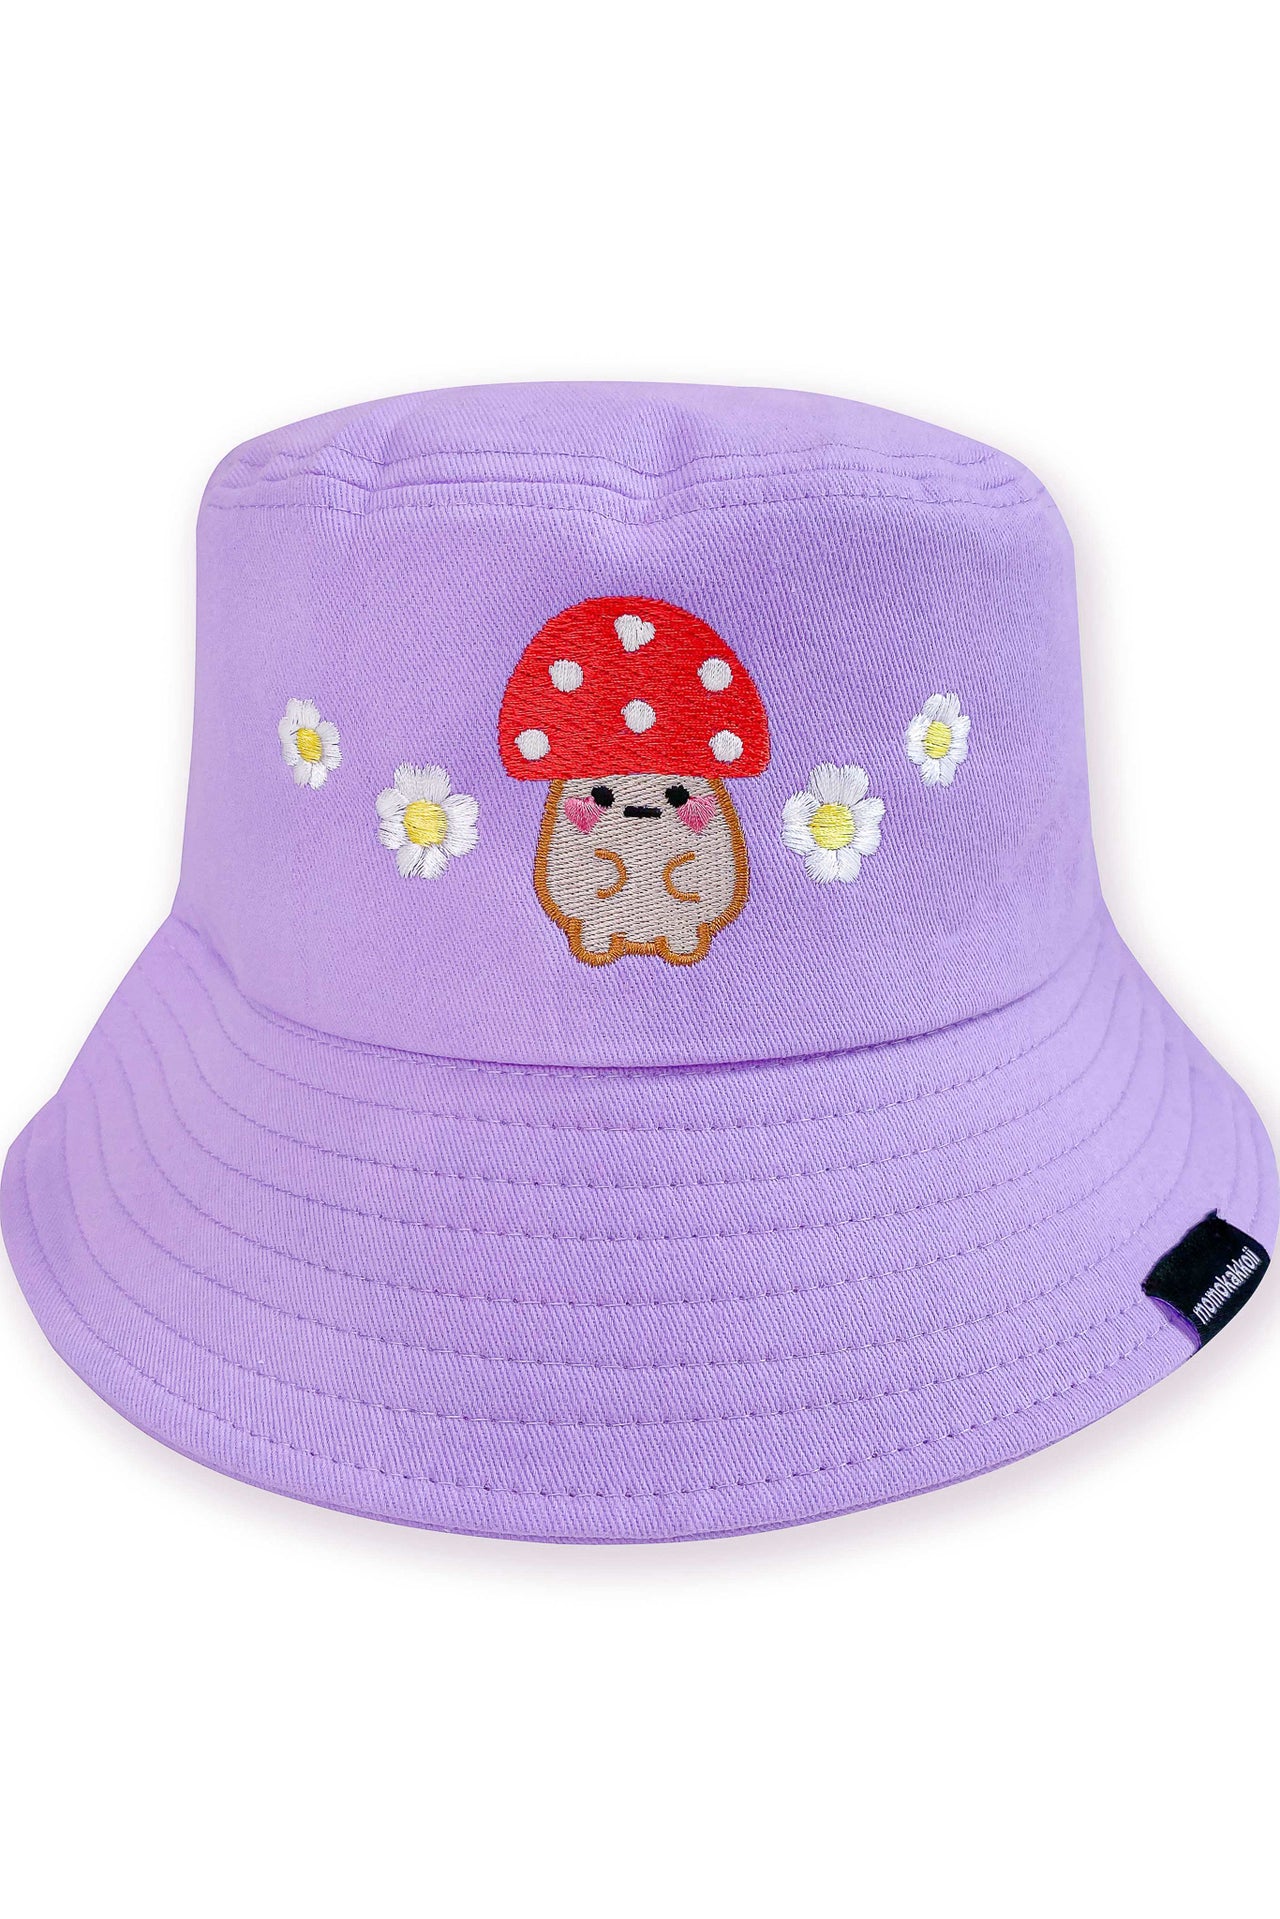 Mushroom Friend & Flowers Embroidered Bucket Hat - Momokakkoii